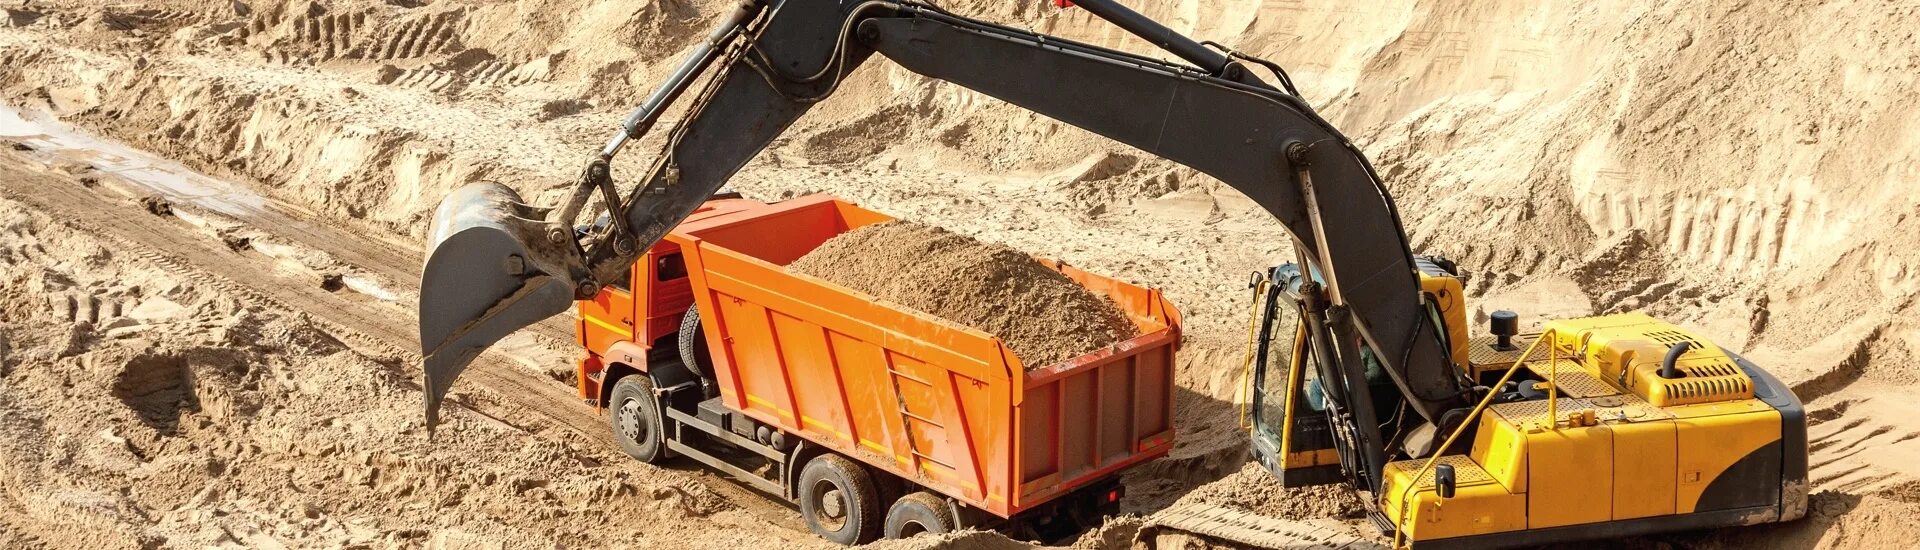 Купить песок в пензе с доставкой. Песок в строительстве. Добыча нерудных строительных материалов. Доставка сыпучих материалов. Самосвал с песком.